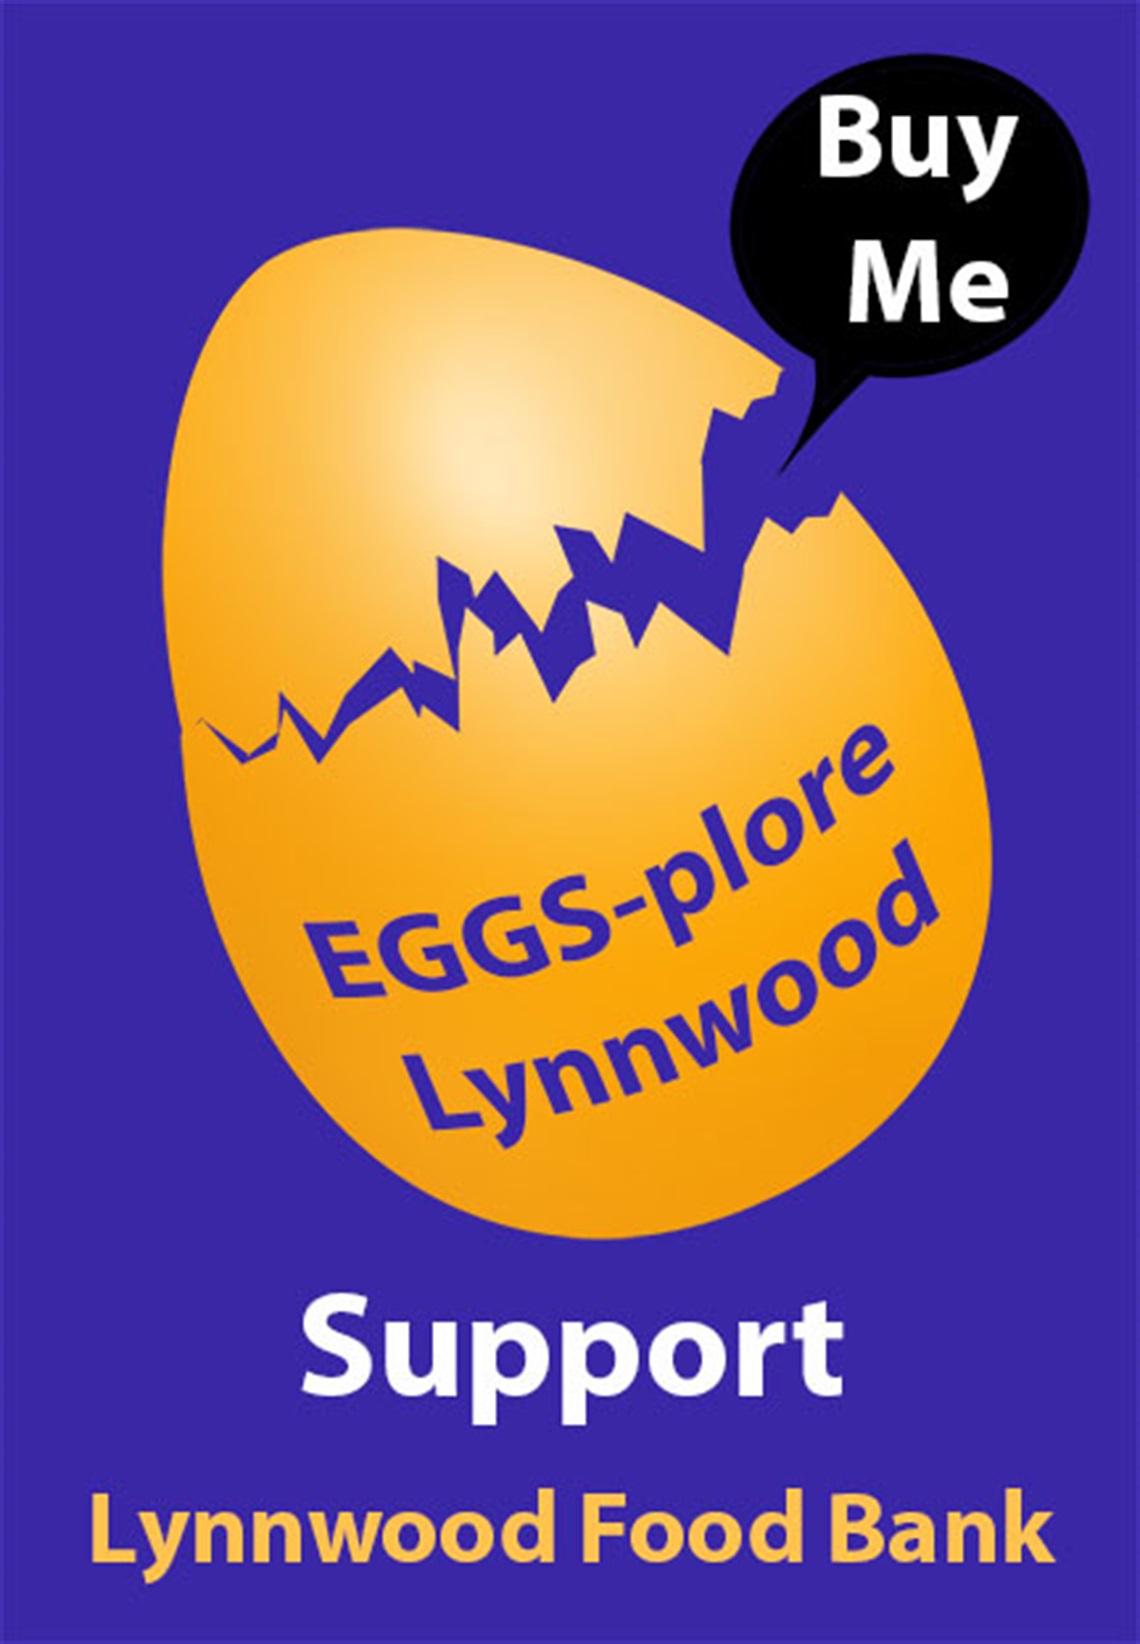 egg-auction-image.jpg